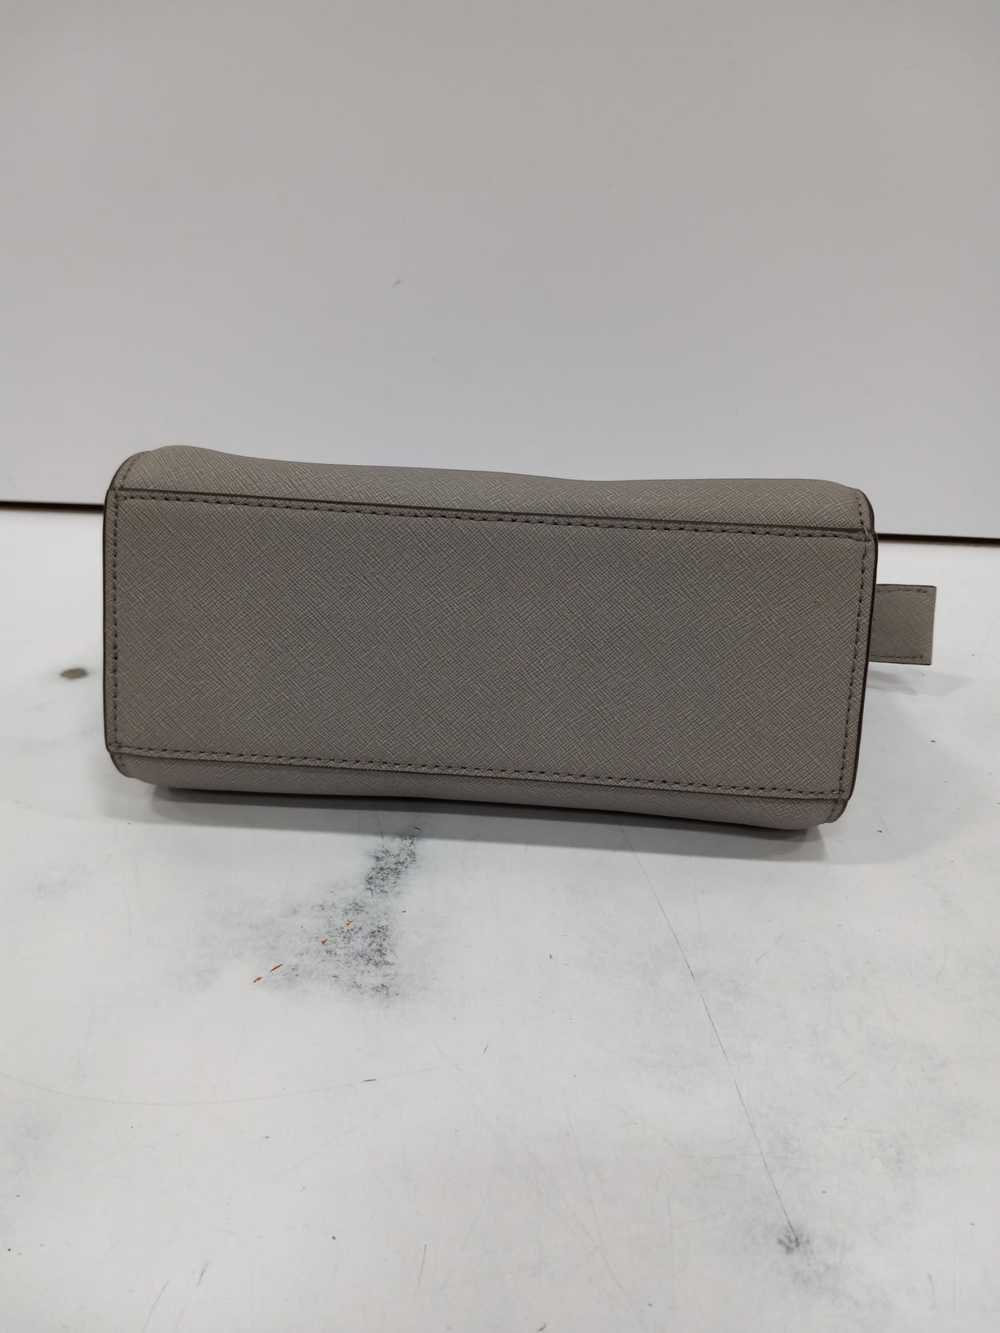 Michael Kors Selma Grey Leather Handbag - image 5